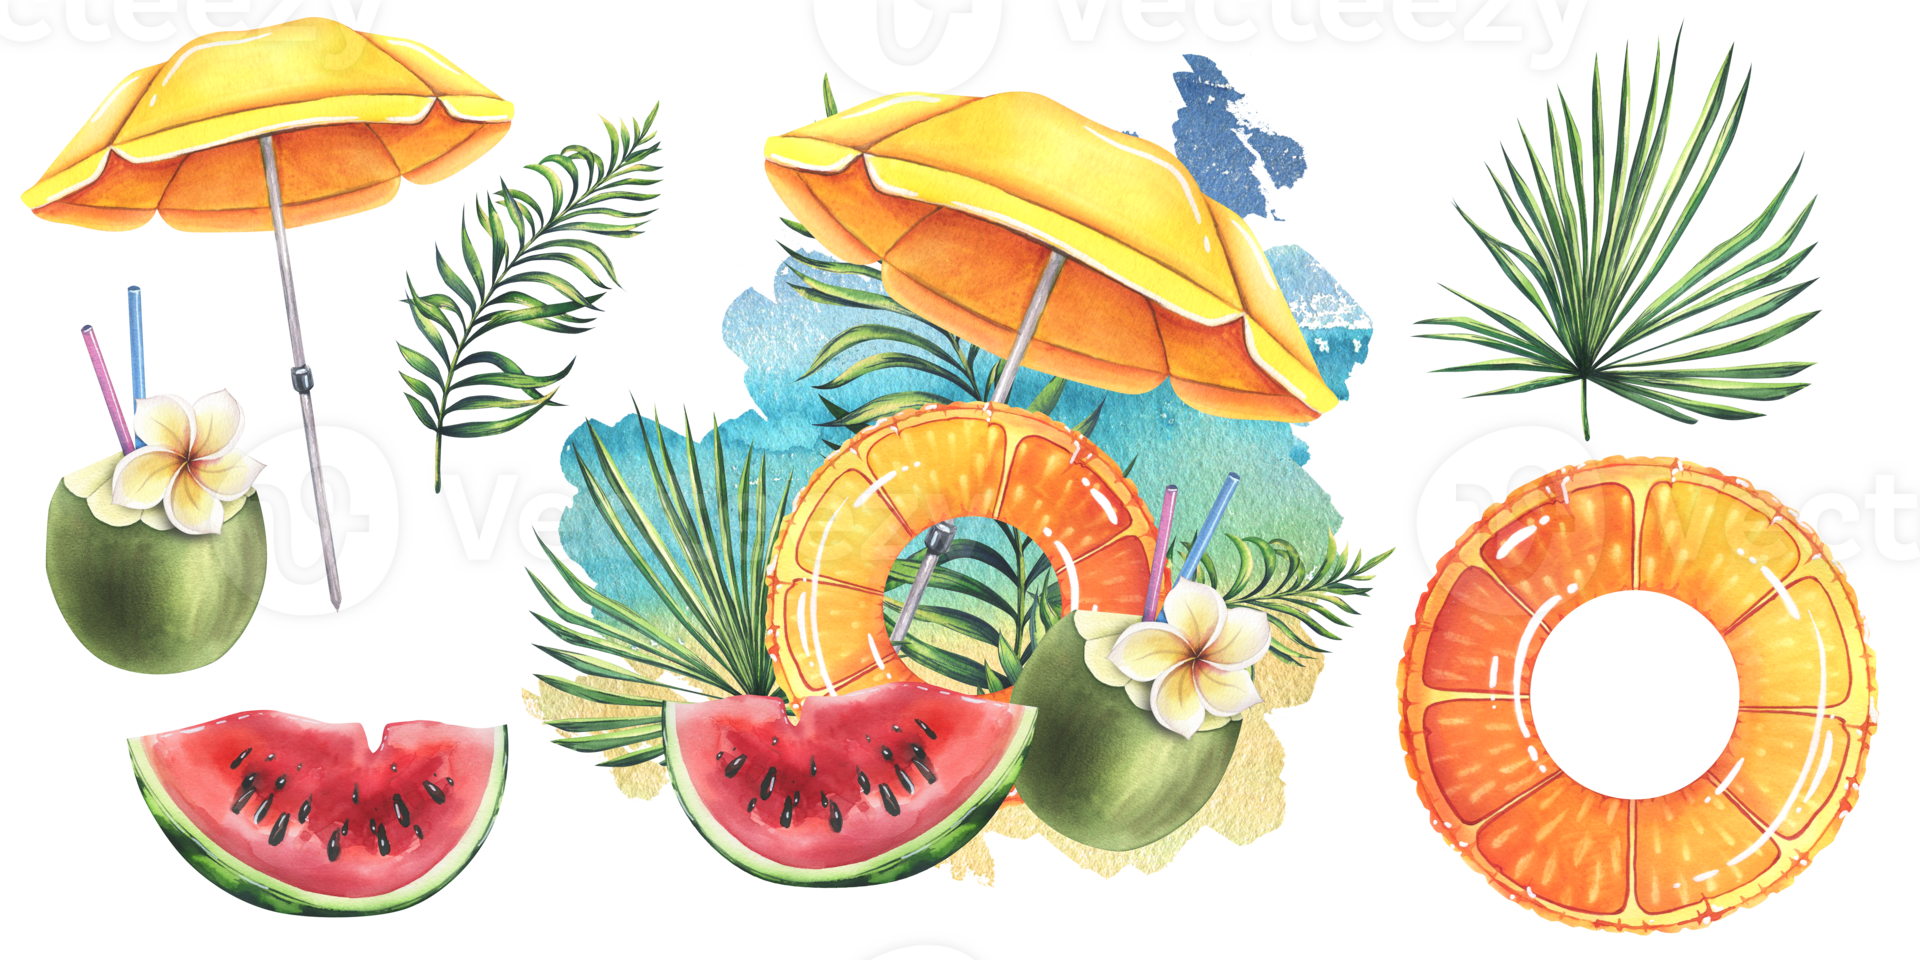  Cocktail Strand Hintergrundbild 1920x960. Strand Regenschirm Gelb mit Orange drucken aufblasbar Ring, Cocktail im Kokosnuss, Wassermelone und tropisch Blätter. Aquarell Illustration, Hand gezeichnet. einstellen von isoliert Objekte 26539847 PNG